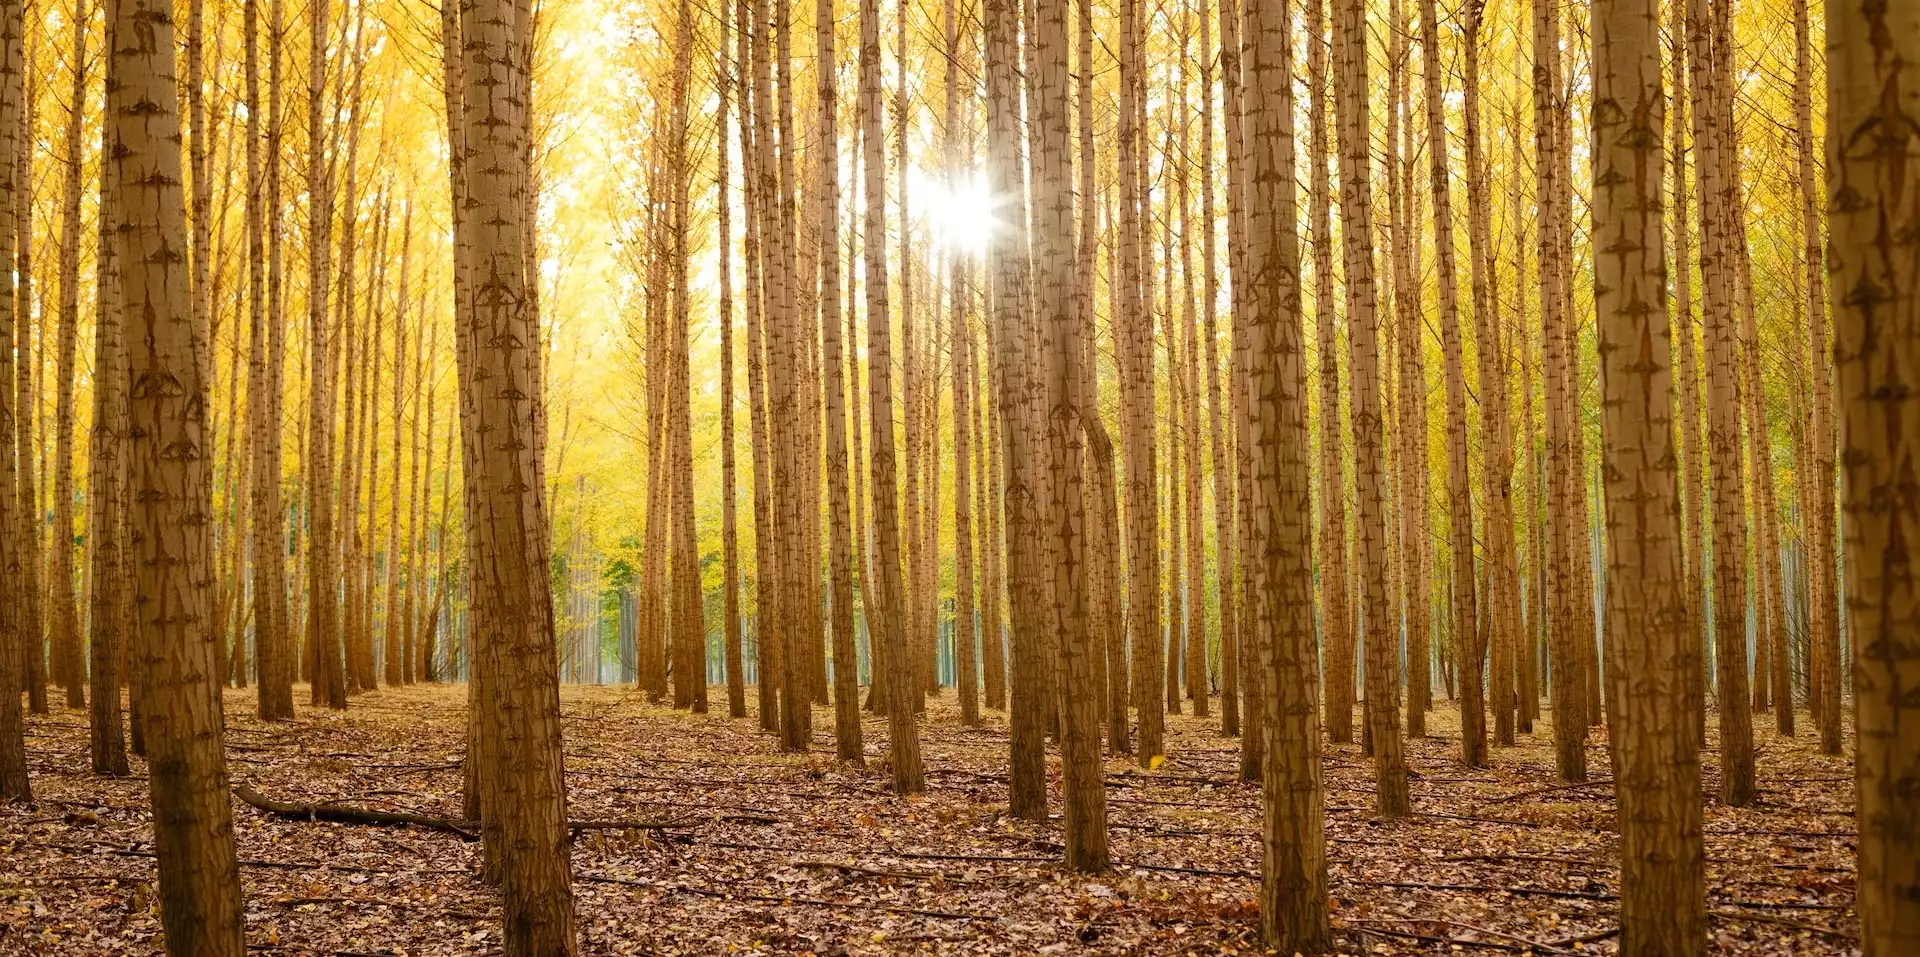 Nachhaltiges Investieren in Waldinvetments bindet das Kapital für eine lange Zeit, bis die Bäume reif werden